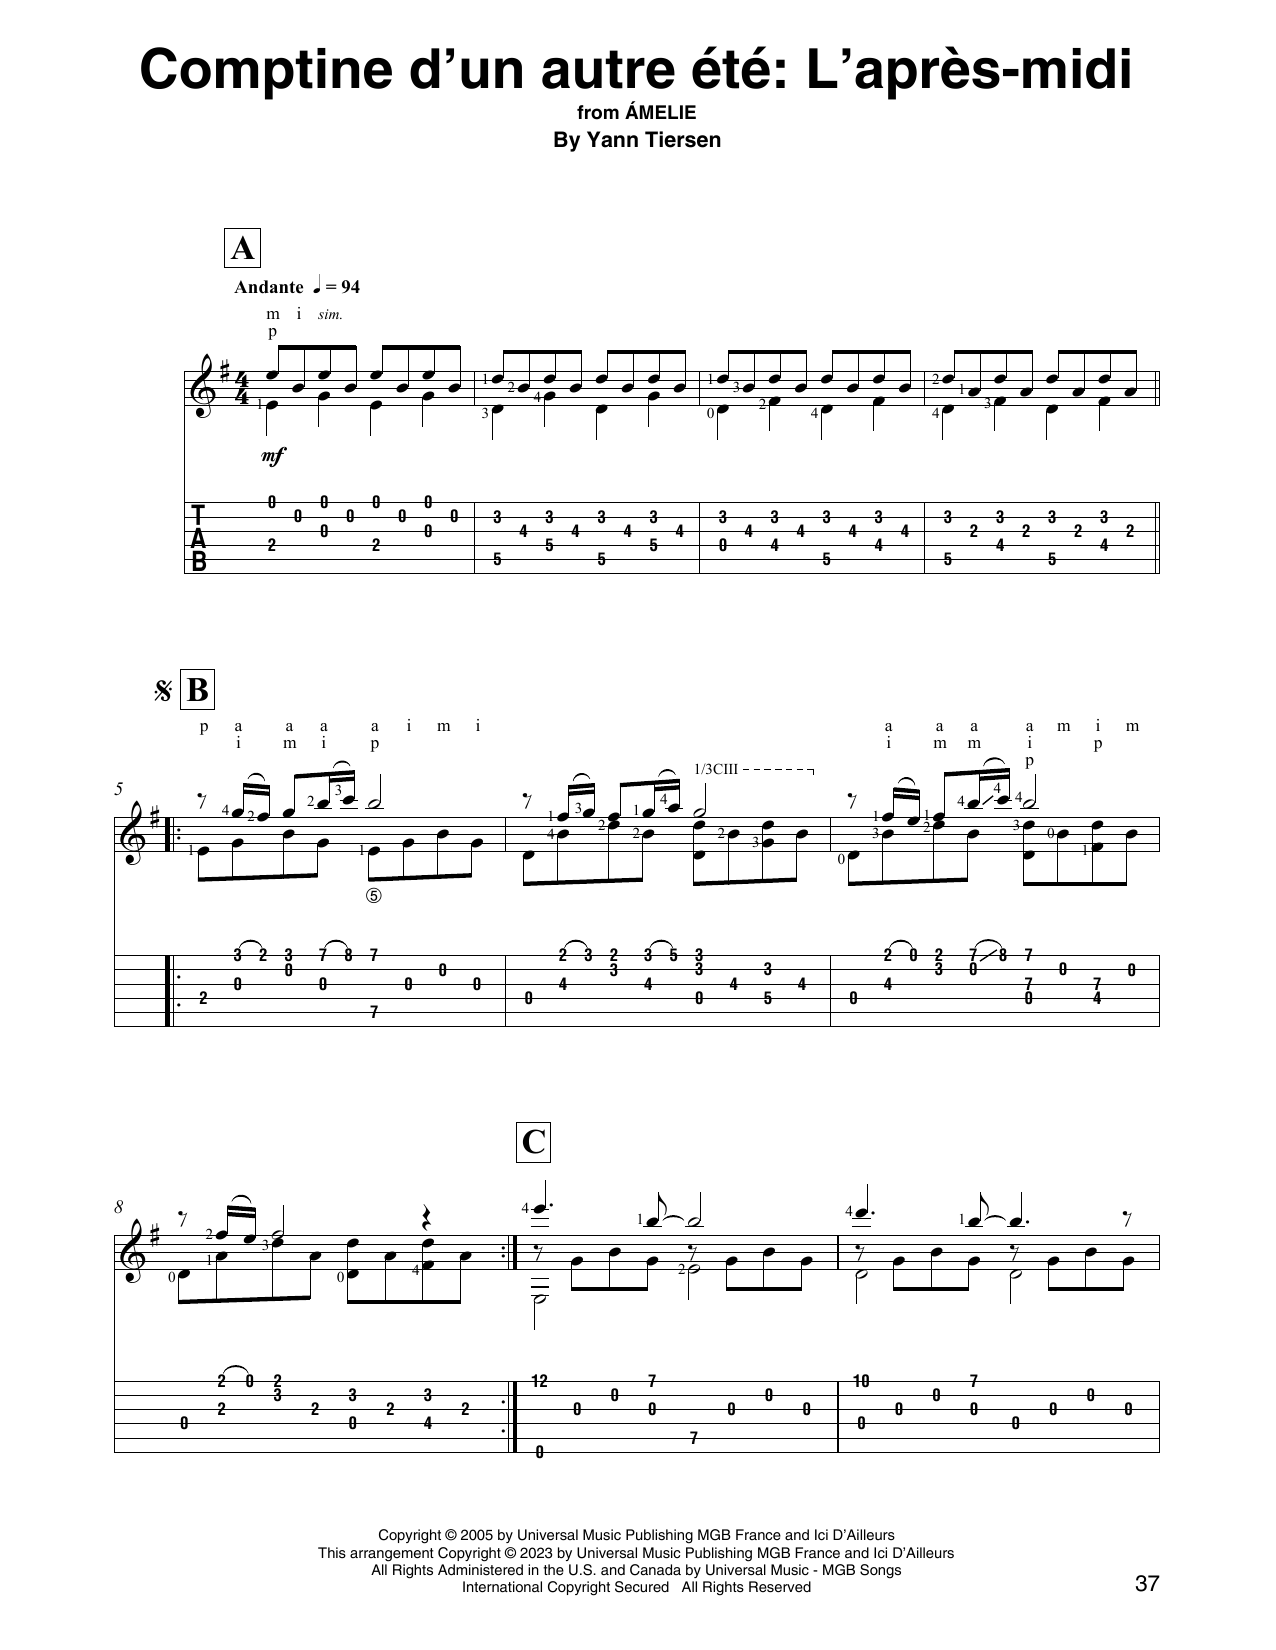 Yann Tiersen Comptine d'un autre été: L'après-midi (from Amelie) Sheet Music Notes & Chords for Solo Guitar - Download or Print PDF